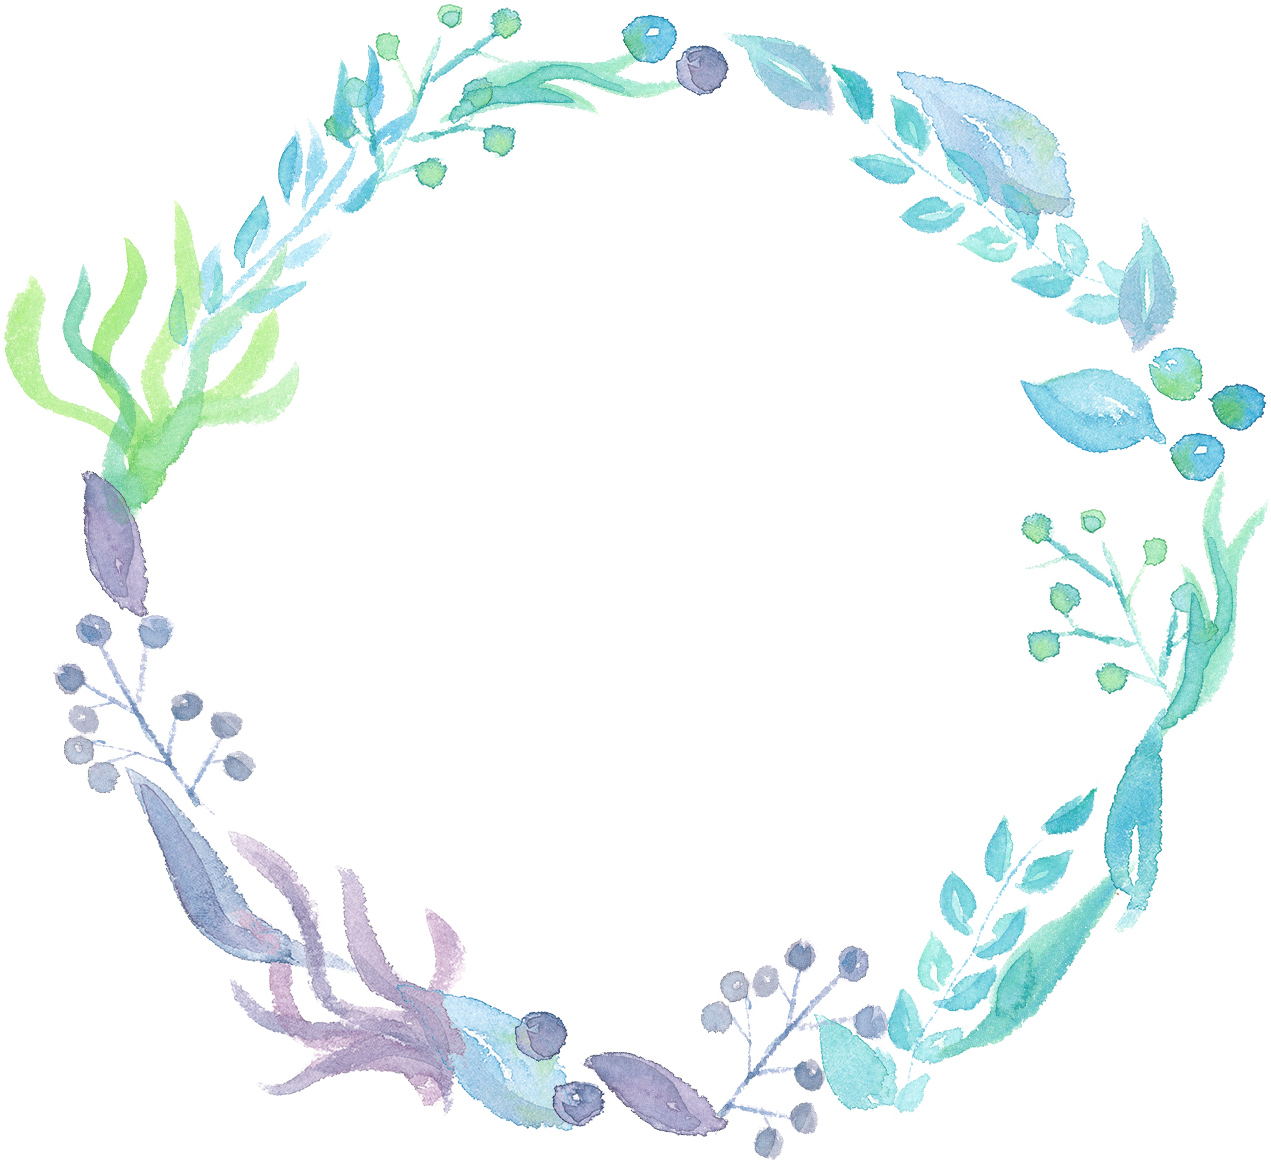 手書きイラスト無料 水彩 葉っぱ 円フレーム 青色 公式 イラスト素材サイト イラストダウンロード